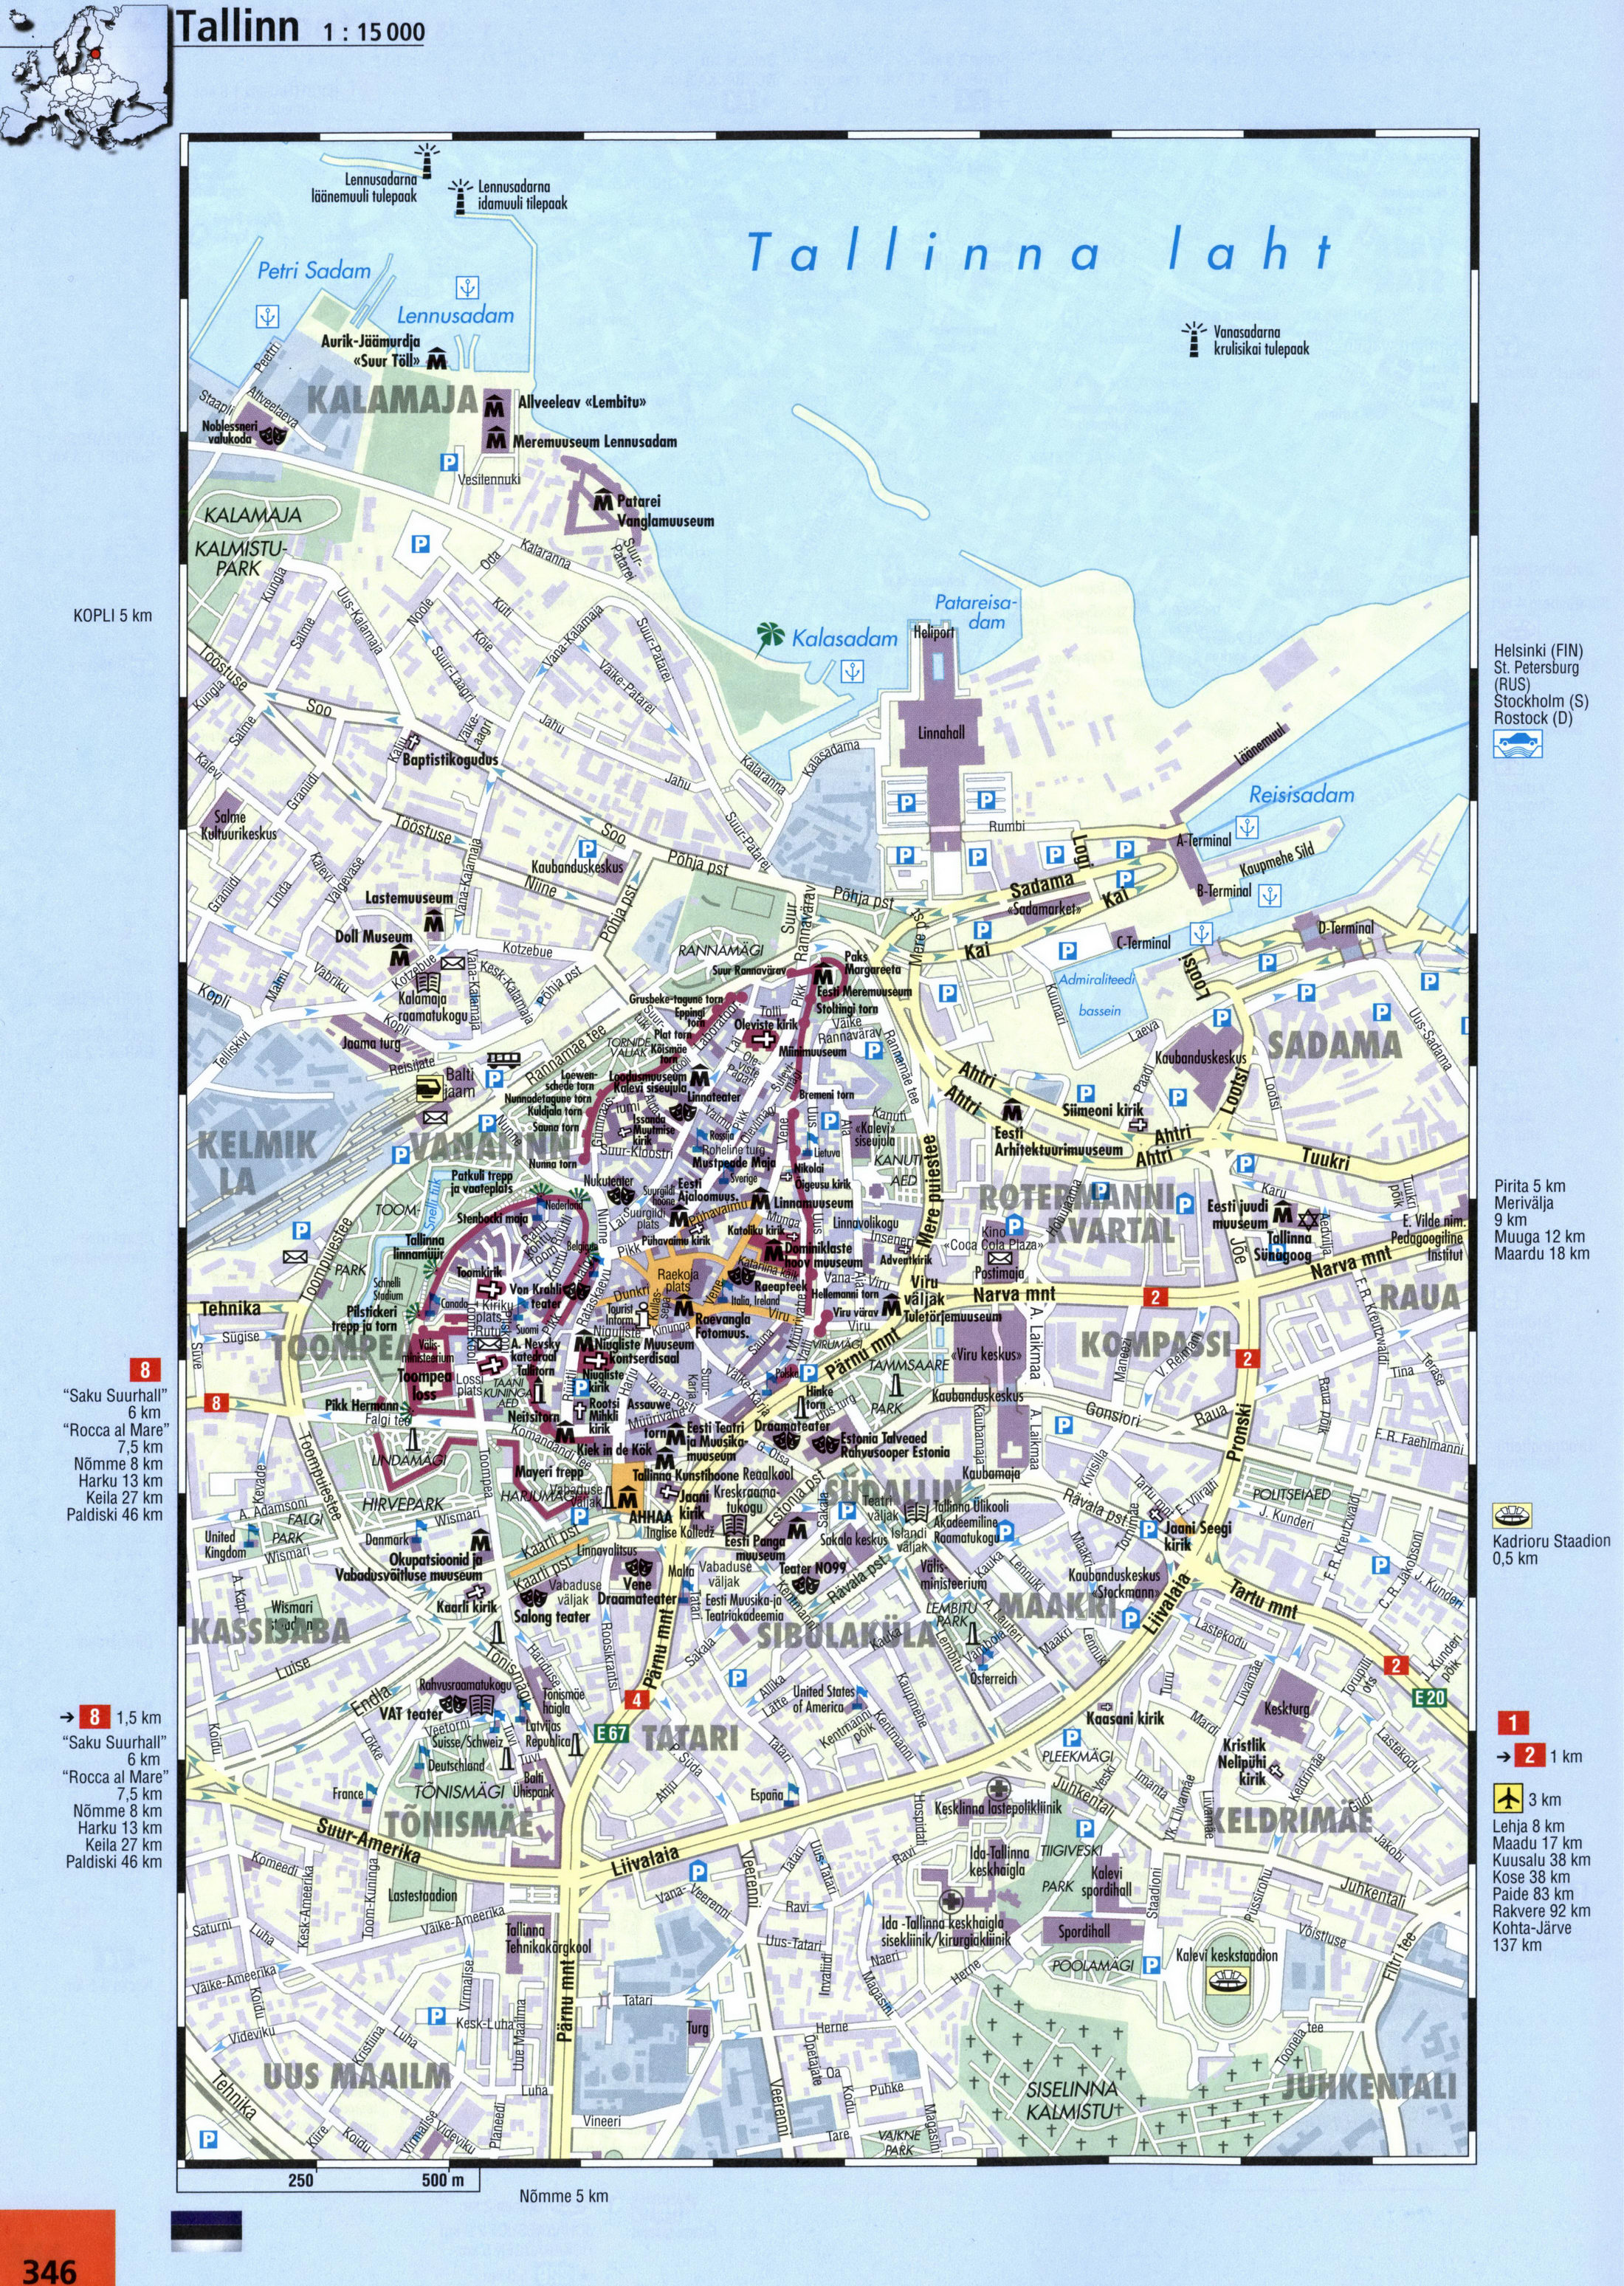 Tallinn streets map